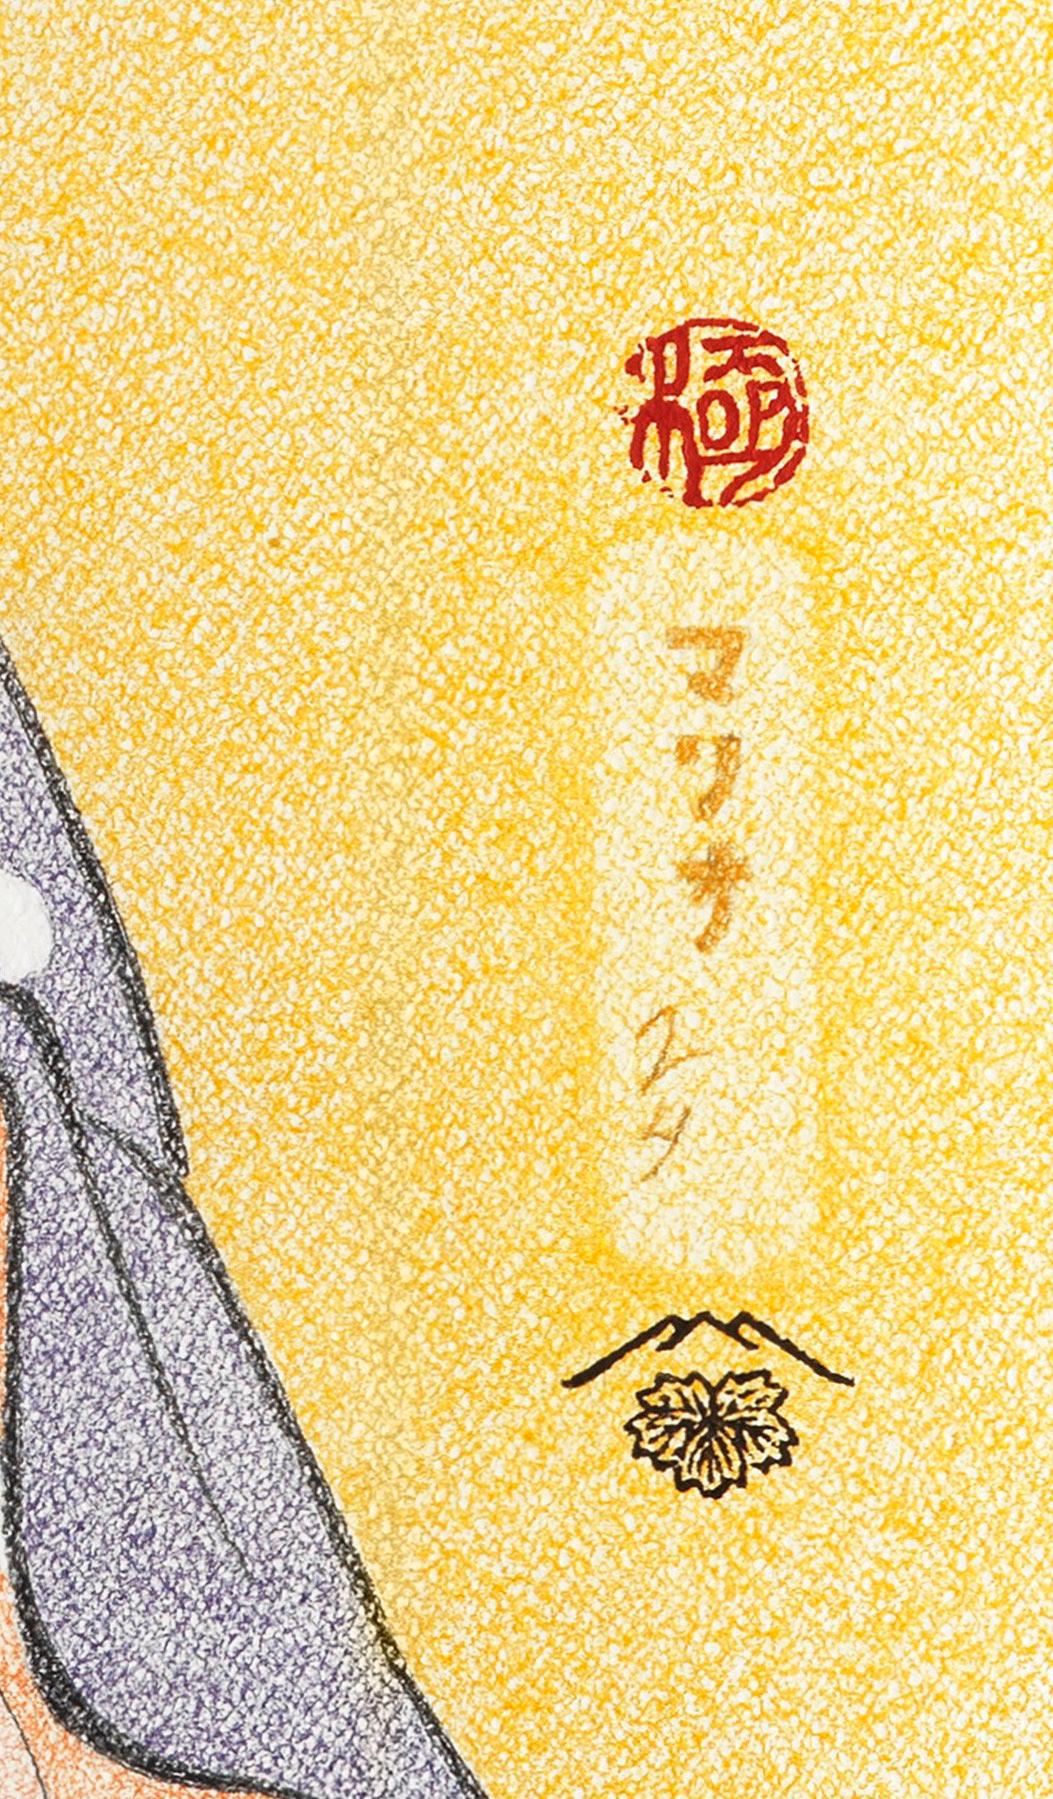 Bijin-ga série XXI (Nº 21)

Titre : Le Hinakoto courtois de la Maison Hyôgorô d'Edo

La courtisane Hinakoto est représentée en train de fumer du tabac. Elle prend délicatement la pipe dans sa main gauche et, dans sa main droite, elle semble tenir un